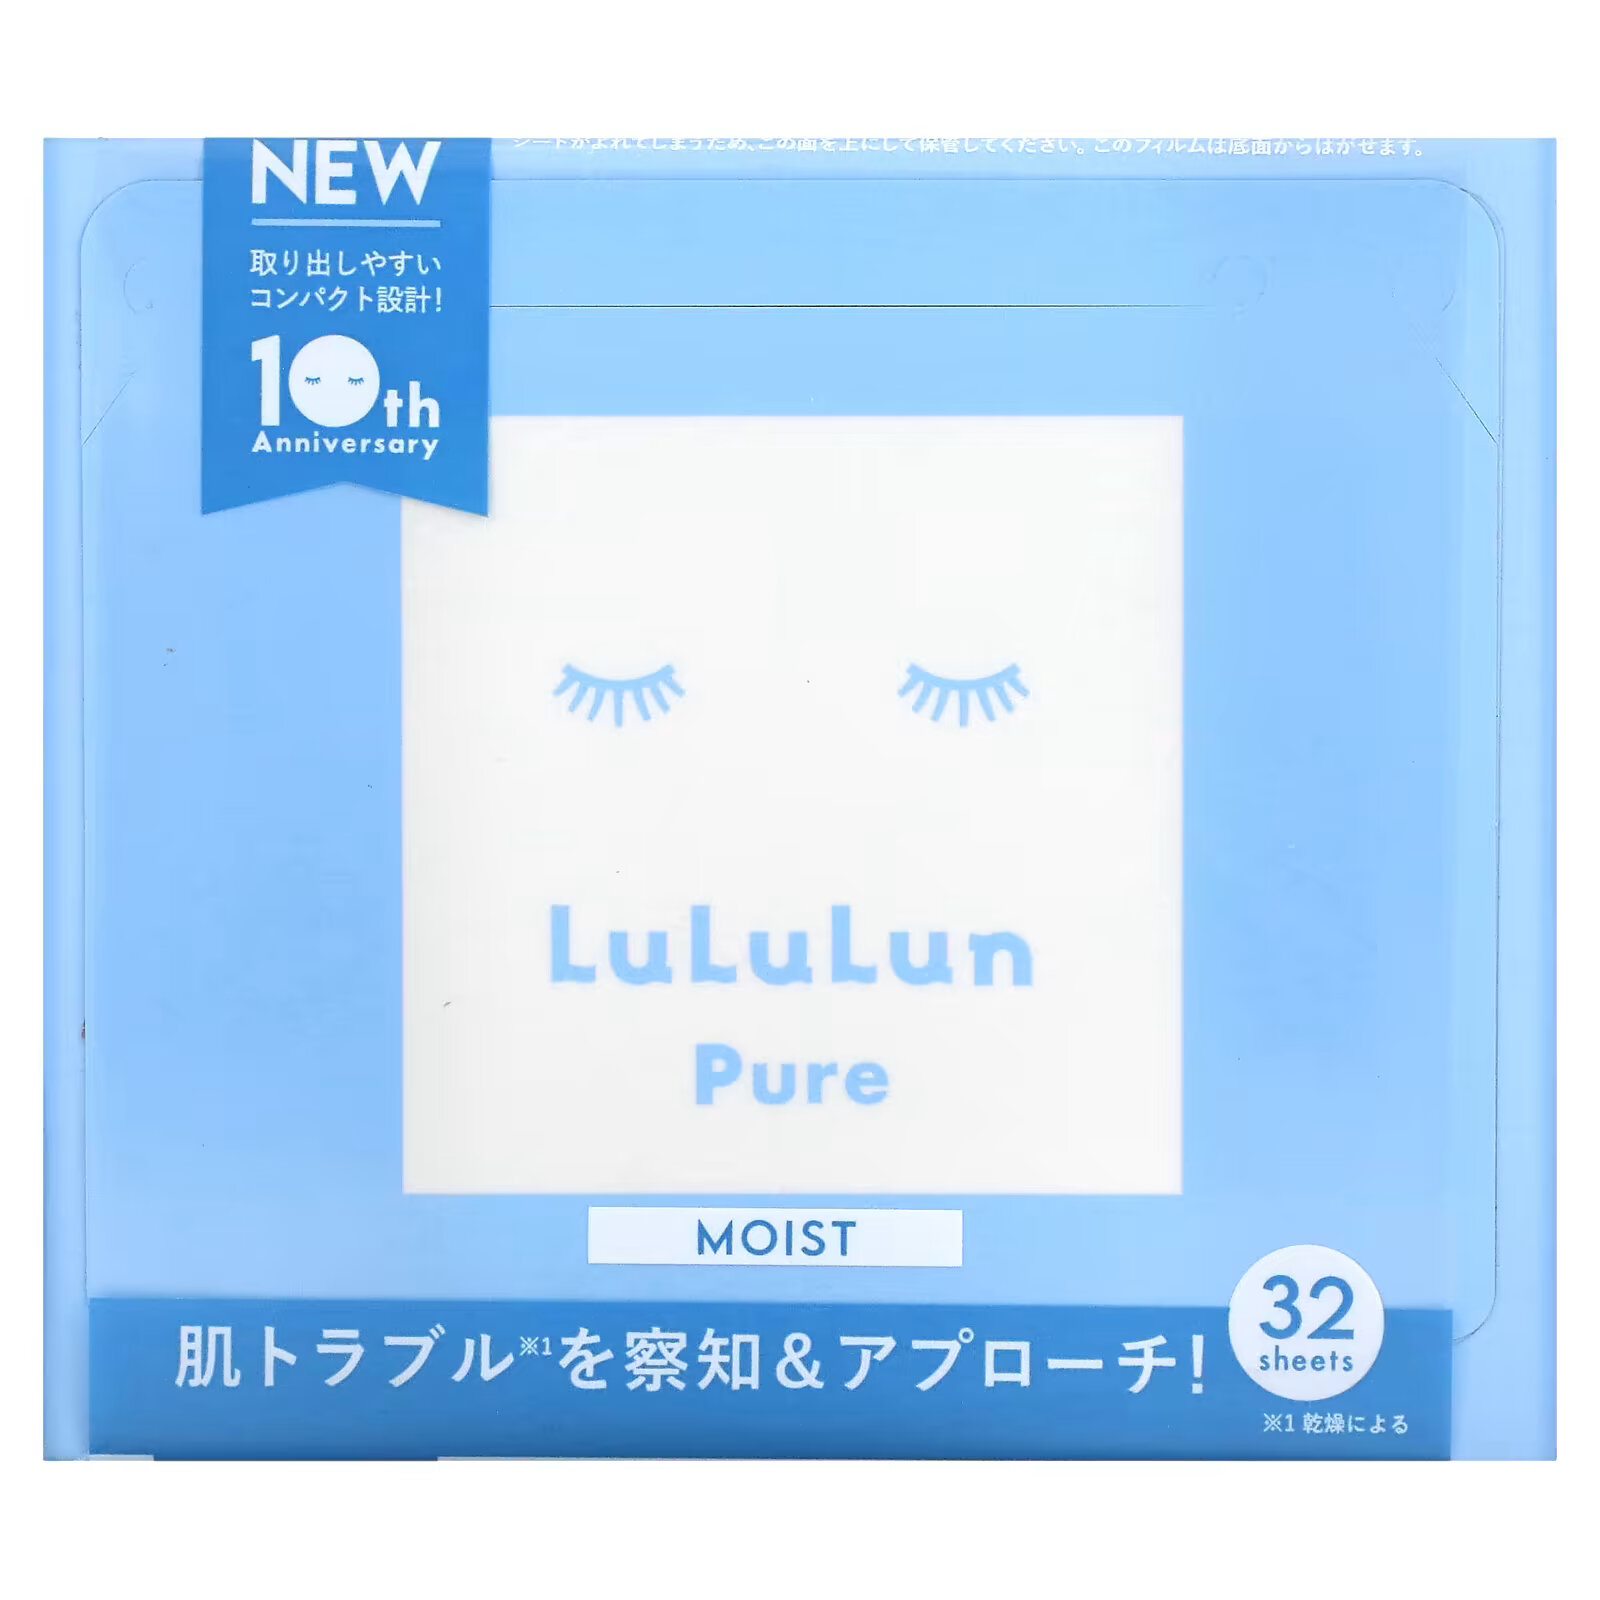 Lululun, Beauty Sheet Mask, увлажняющая, чистый синий 6FB`` 32 шт. lululun beauty sheet mask увлажняющая чистый синий 6fb 32 шт